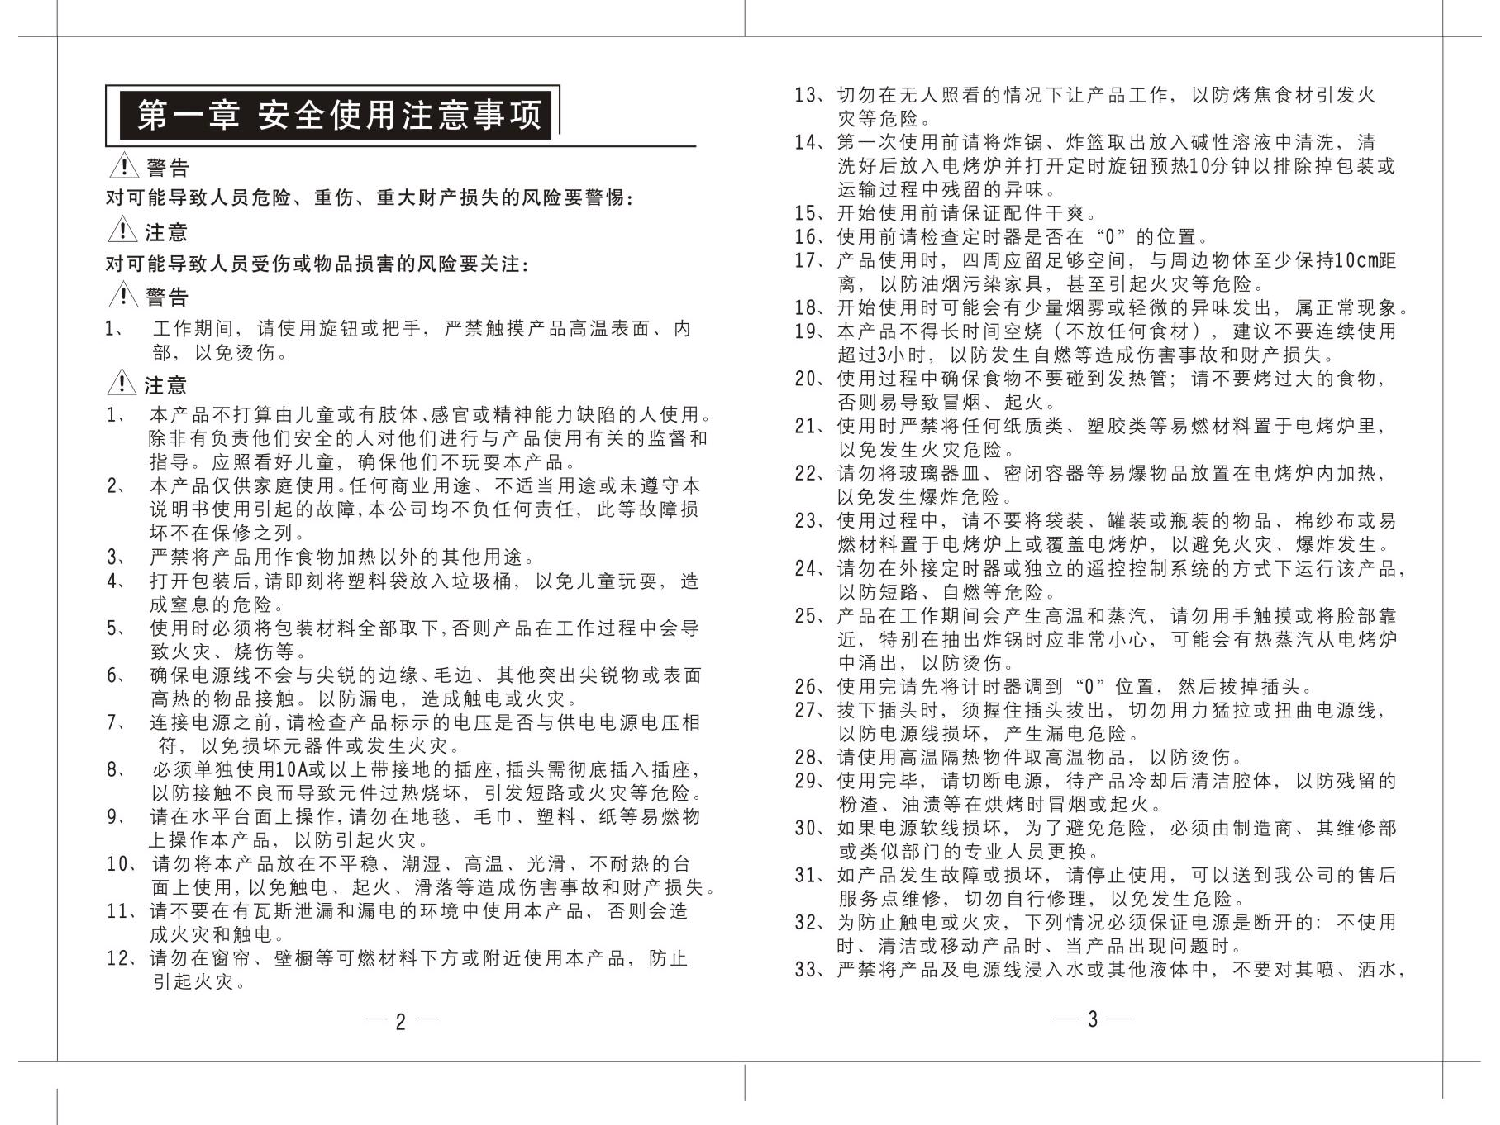 九阳 Joyyoung KL-J3A, KL32-J67 使用说明书 第2页